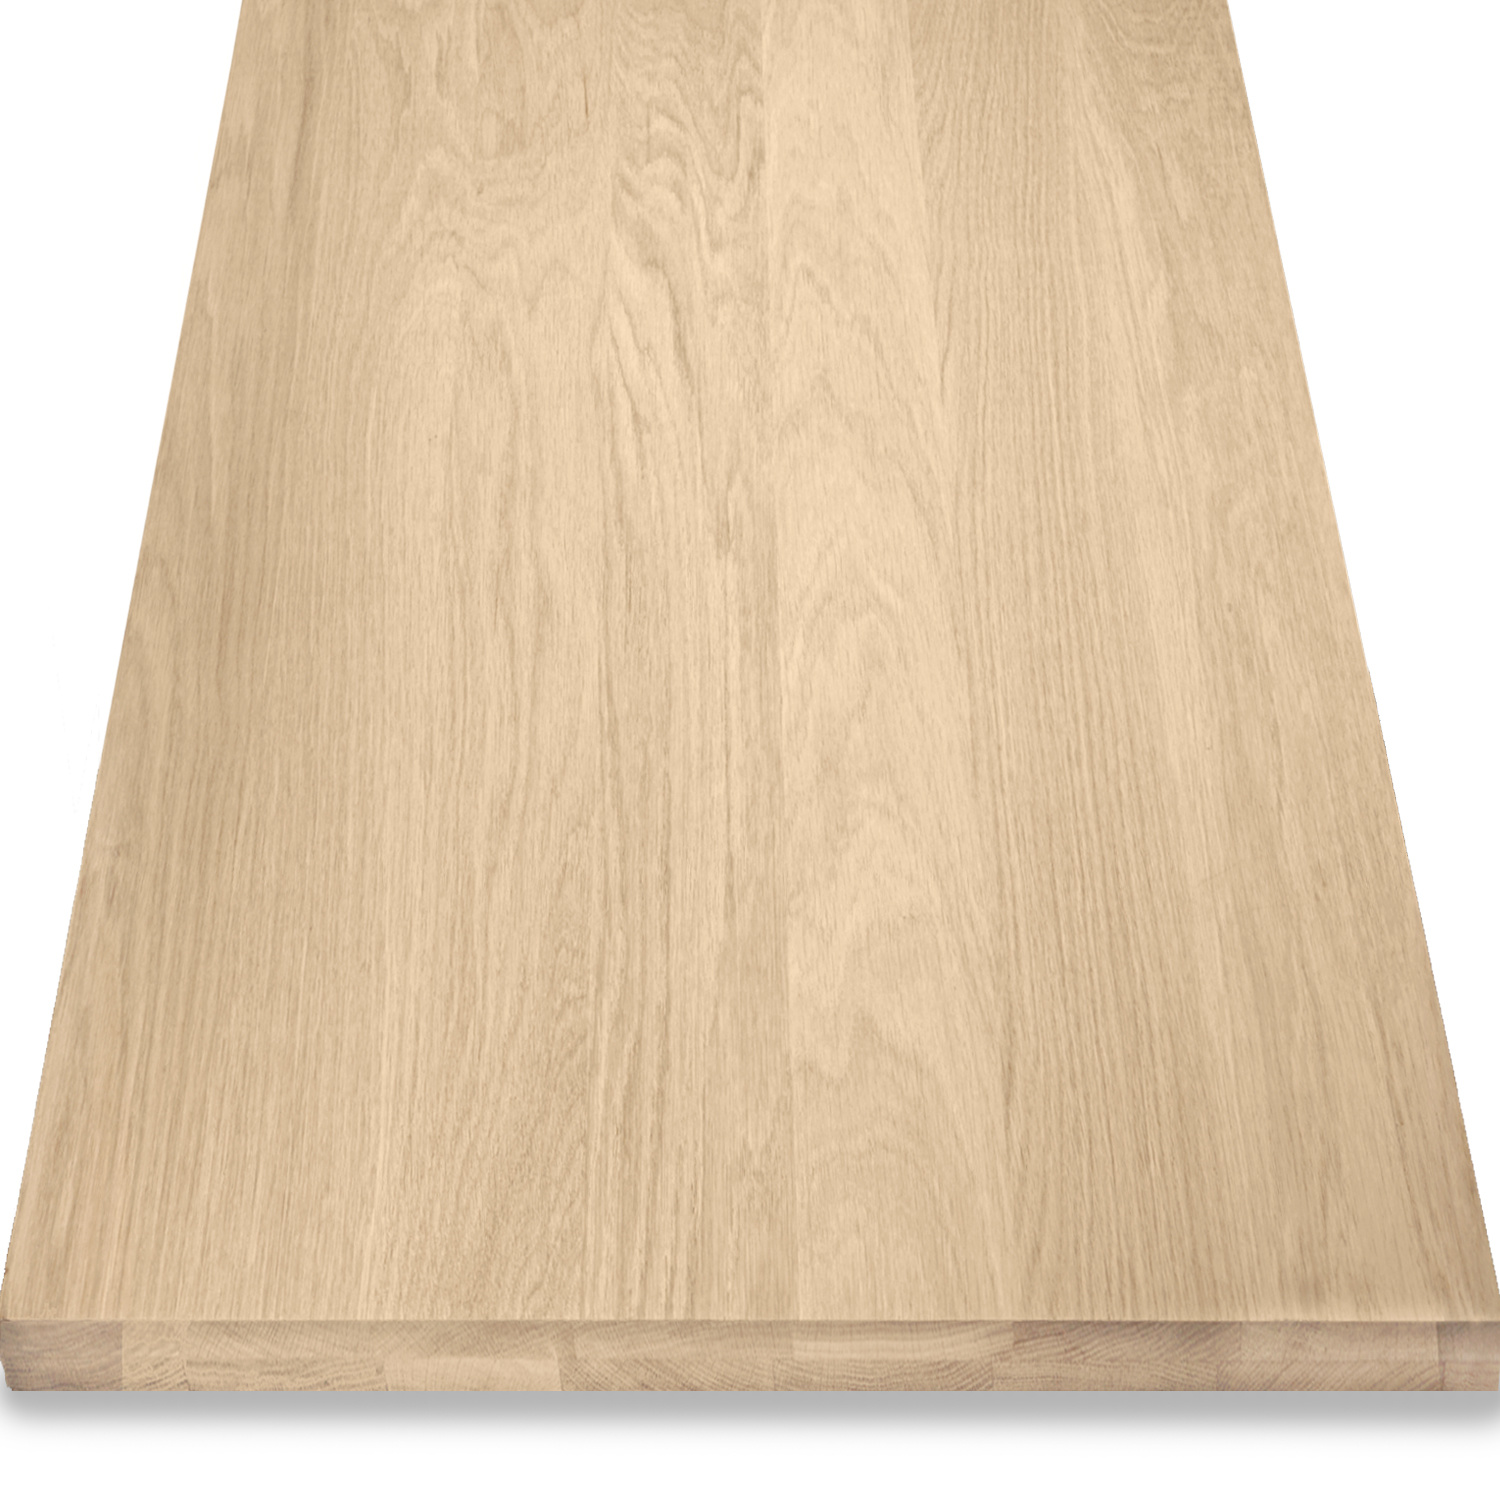  Leimholzplatte Eiche nach Maß - 4,6 cm dick (2-lagig) - Eichenholz A-Qualität- Eiche Massivholzplatte - verleimt & künstlich getrocknet (HF 8-12%) - 15-120x20-260 cm